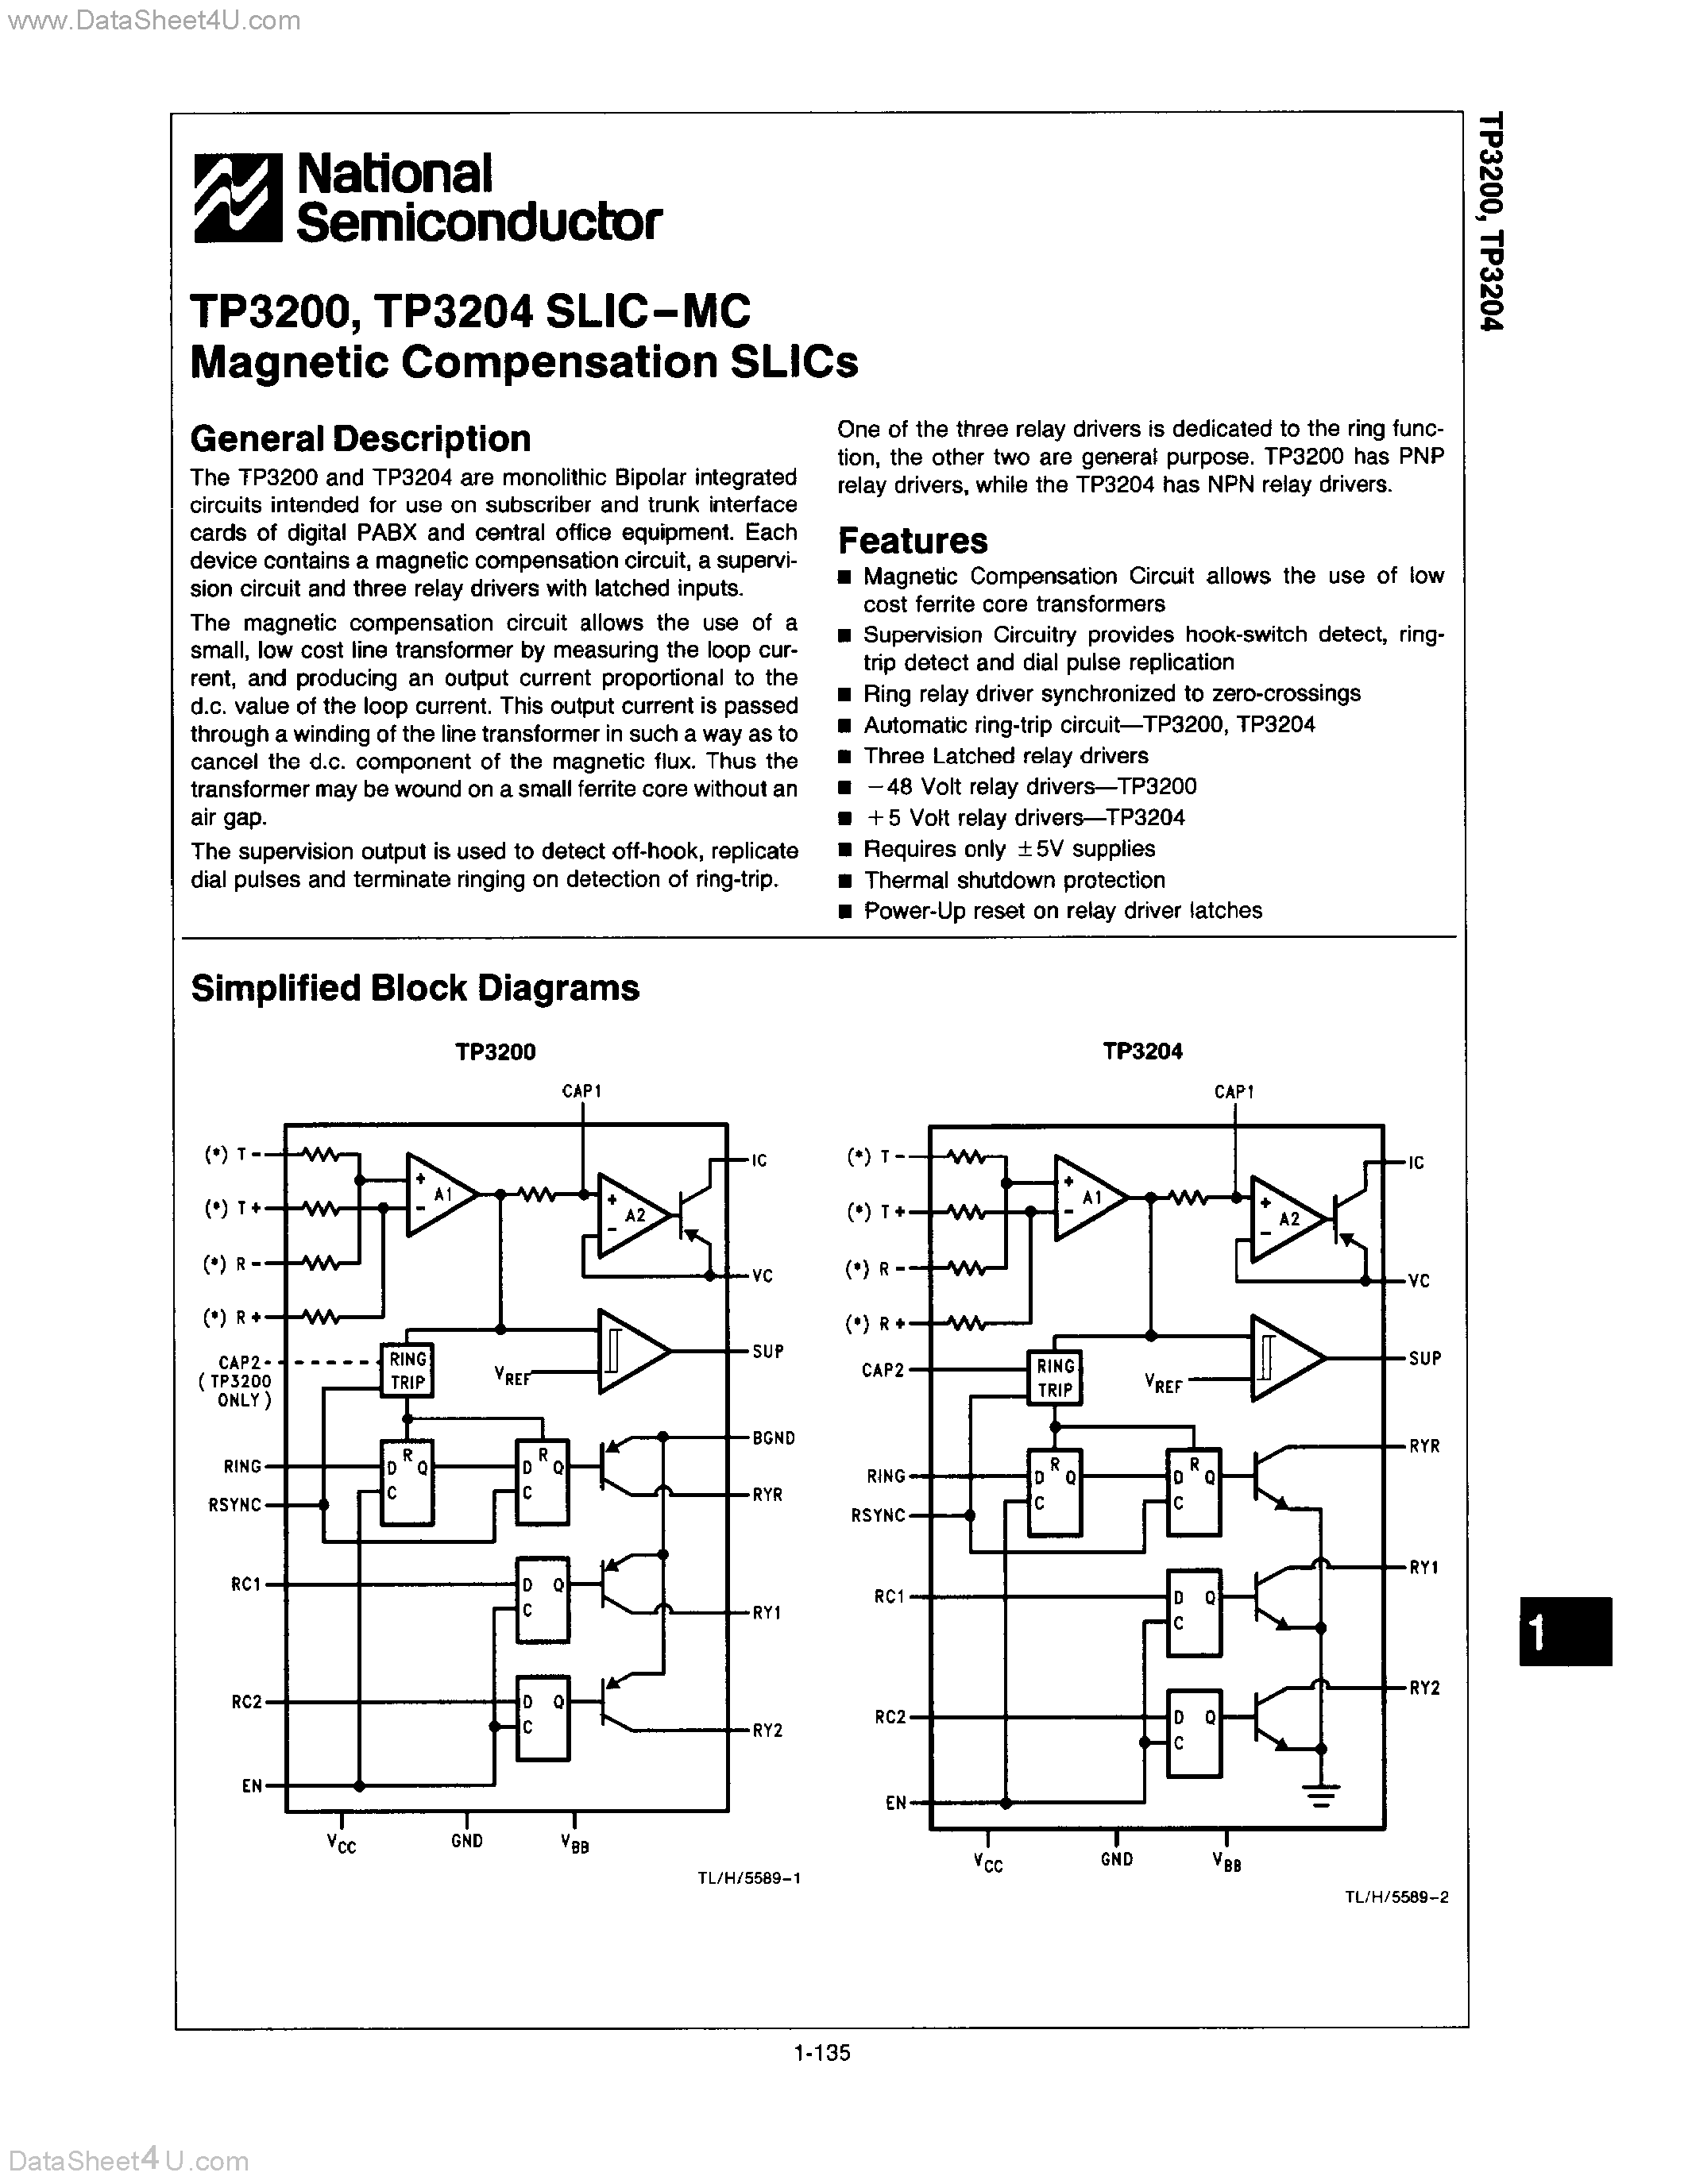 Даташит TP3200 - (TP3200 / TP3204) SLIC-MC MAGNETIC COMPENSATION SLICS страница 1